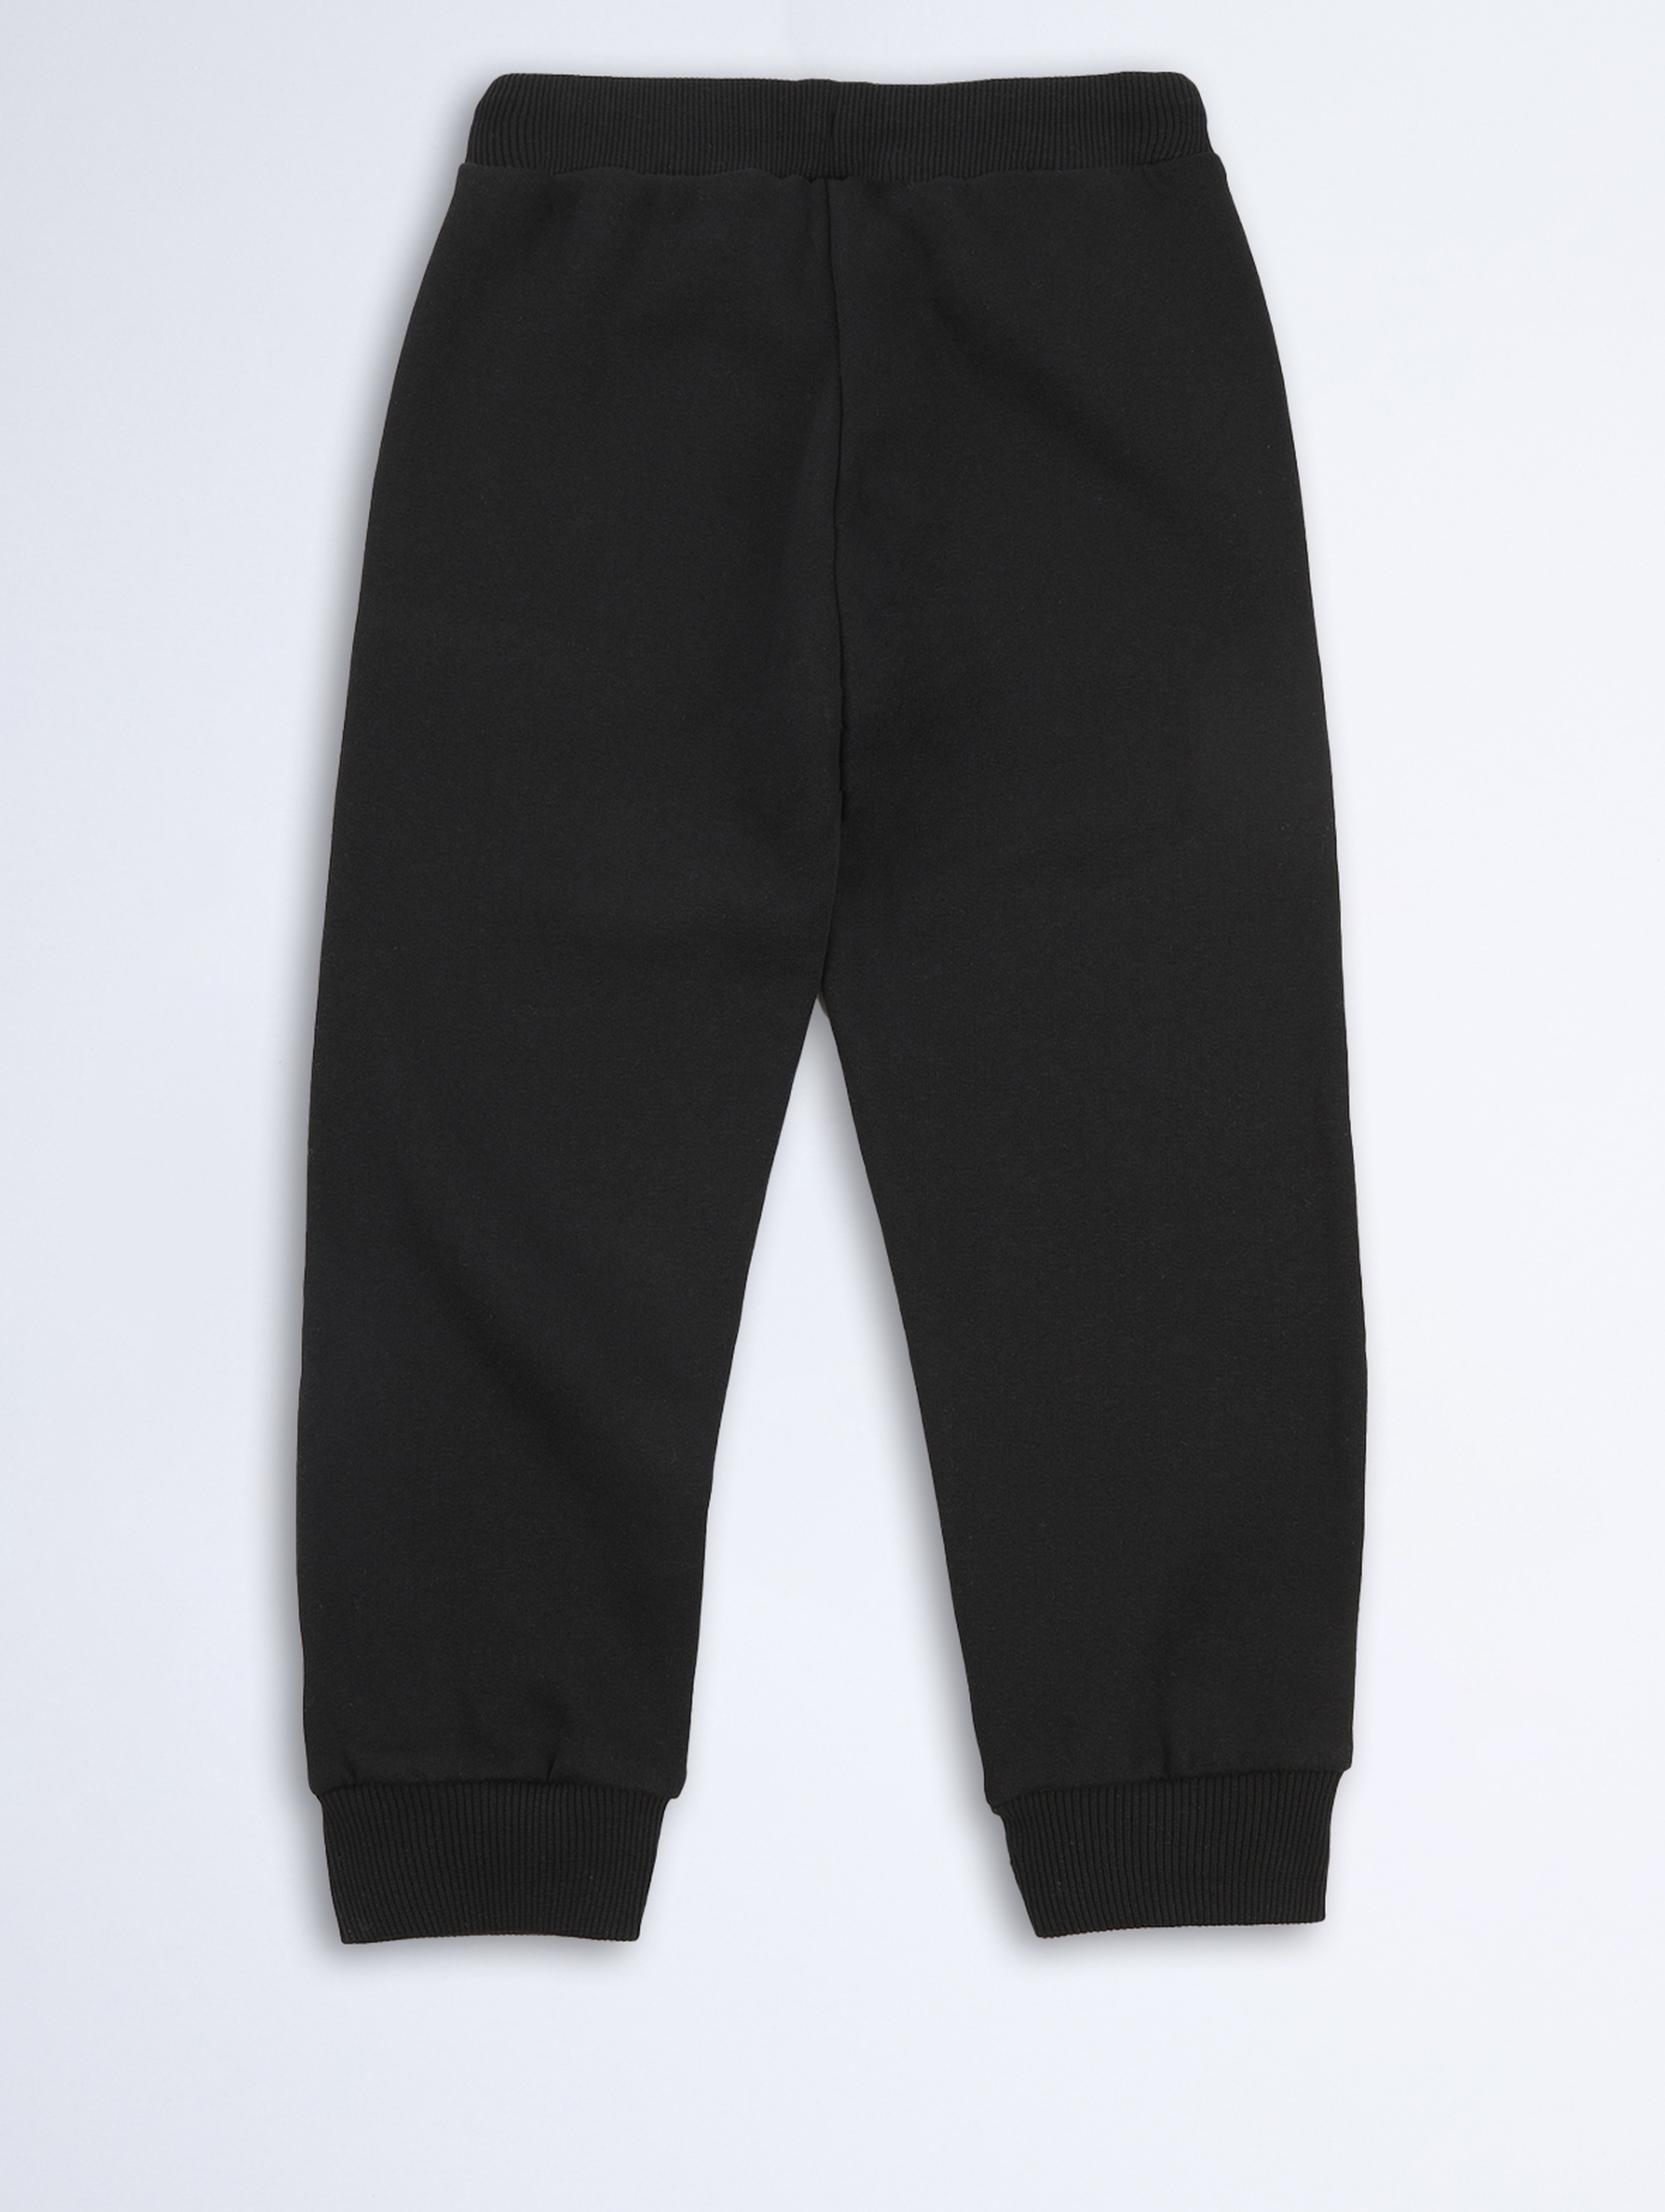 Czarne spodnie dresowe dla dziecka - unisex - Limited Edition